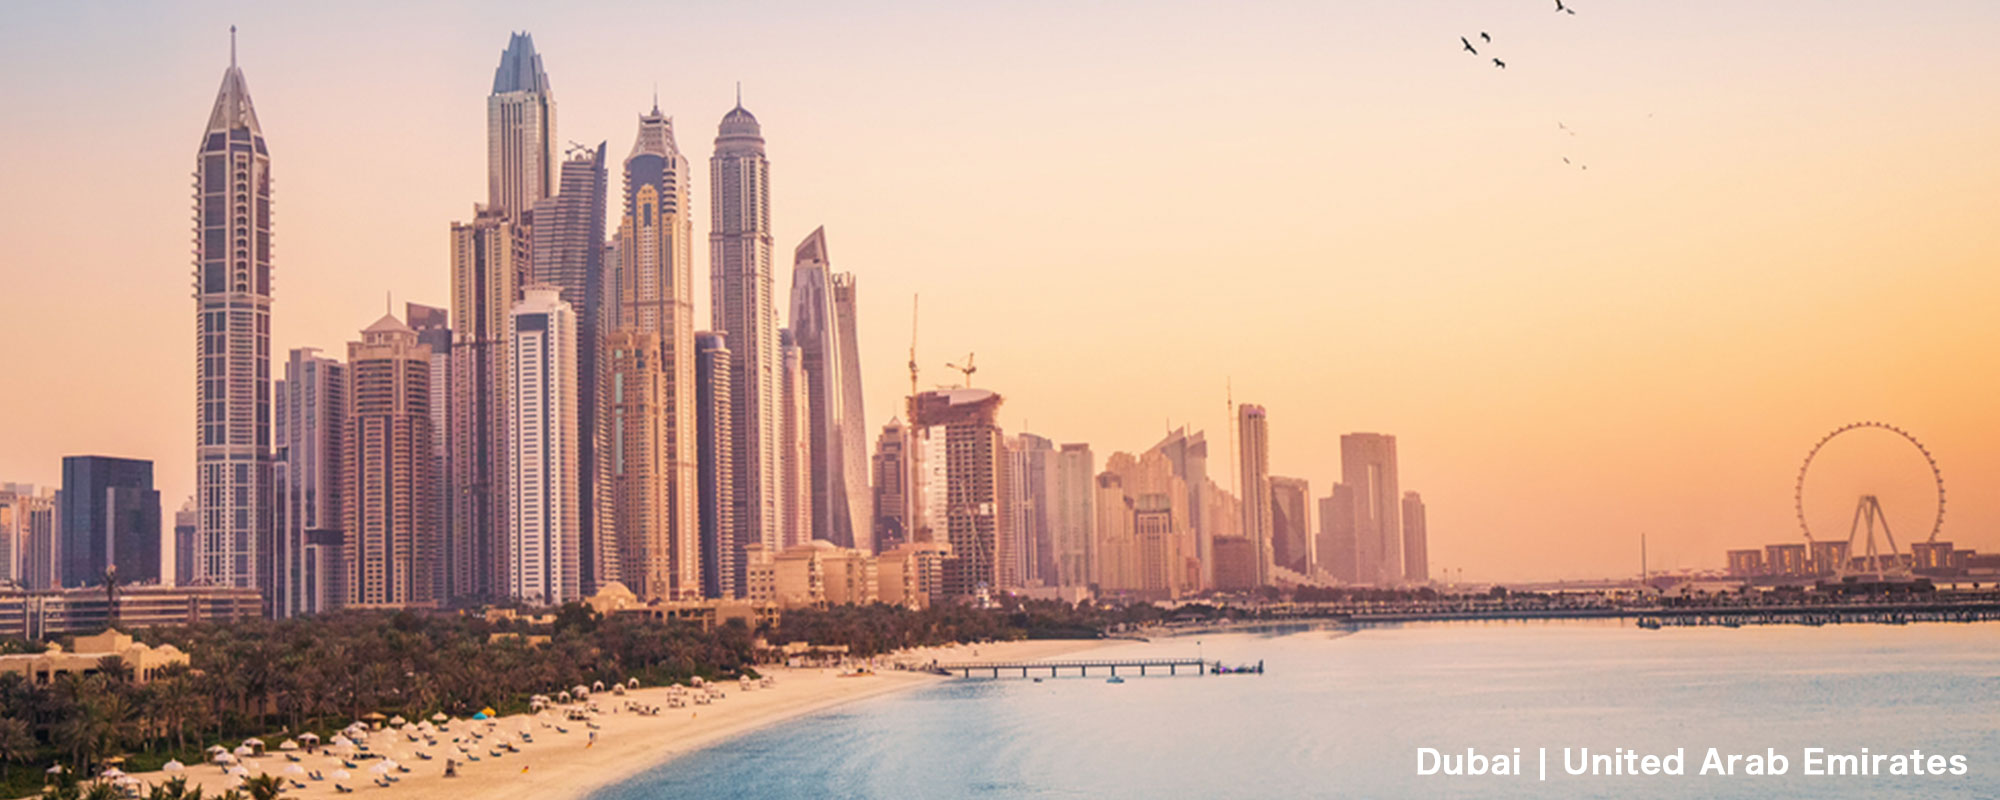 Dubai | United Arab Emirates